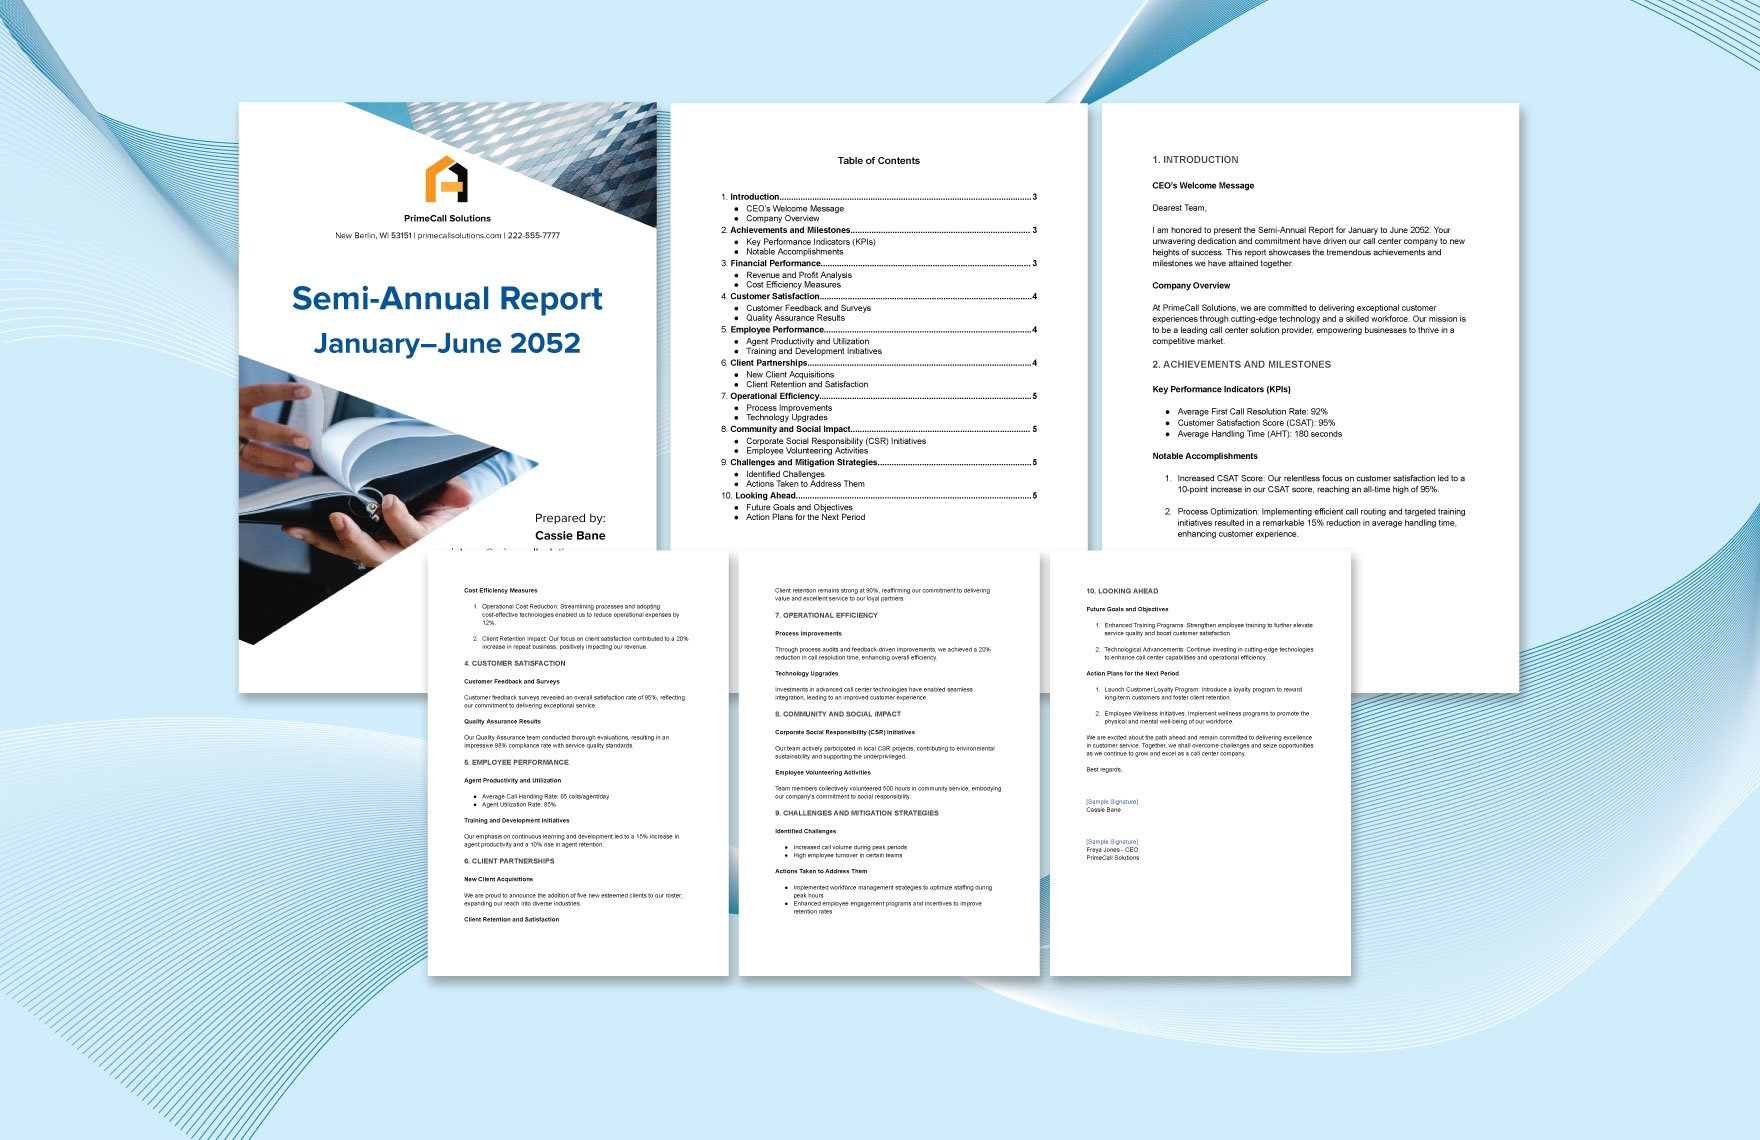 Semi-Annual Report Template